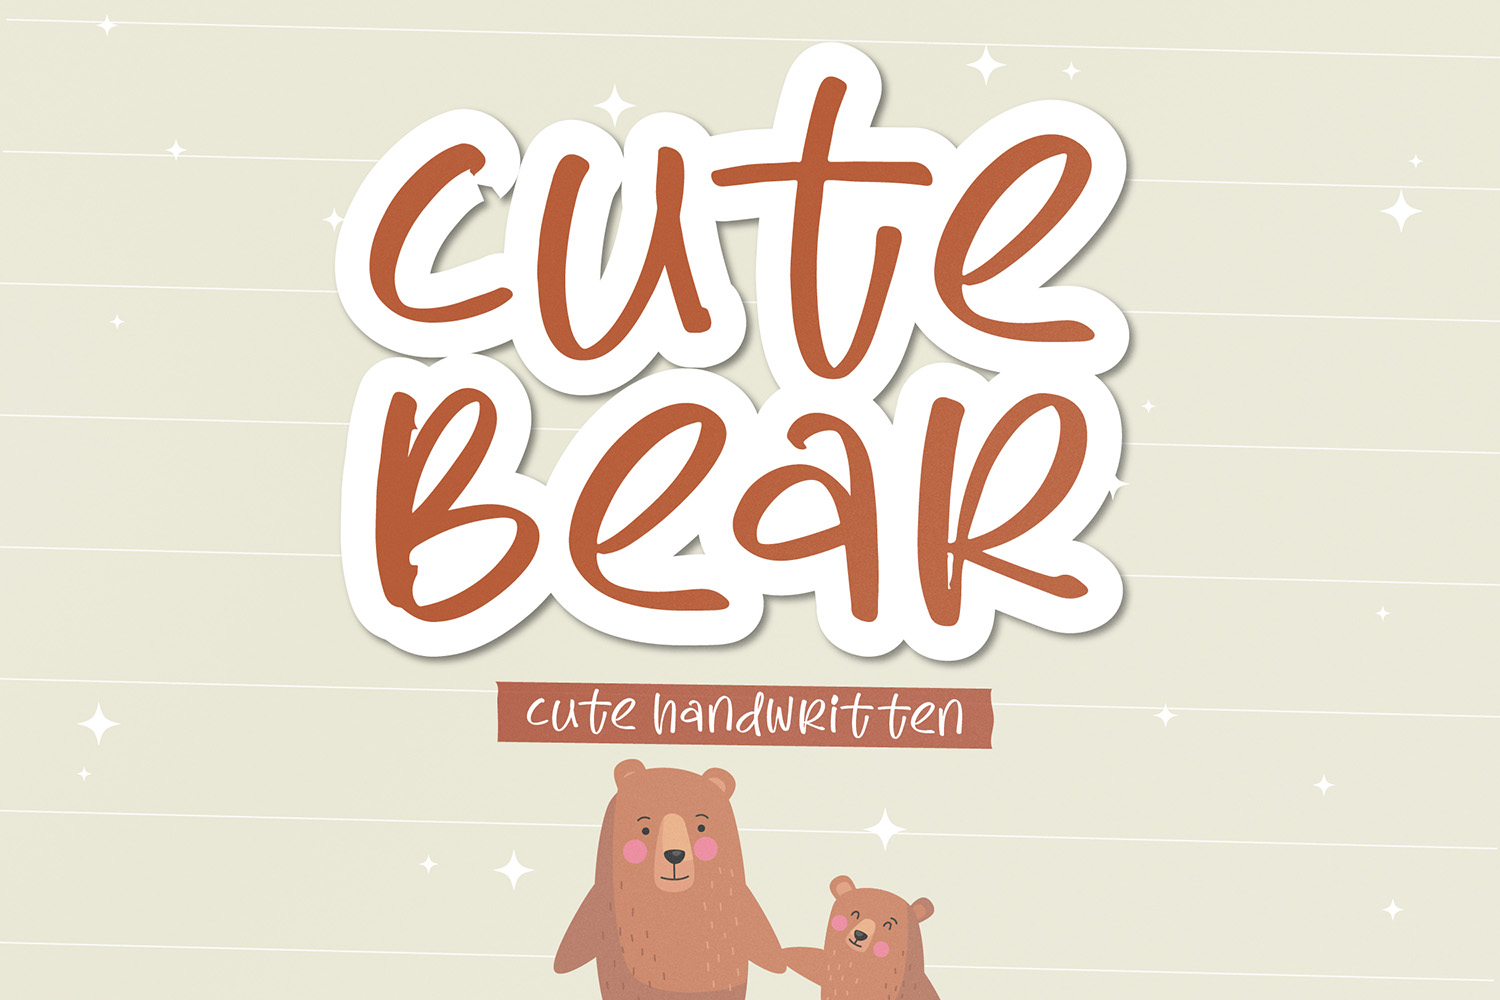 Cute Bear Free Font